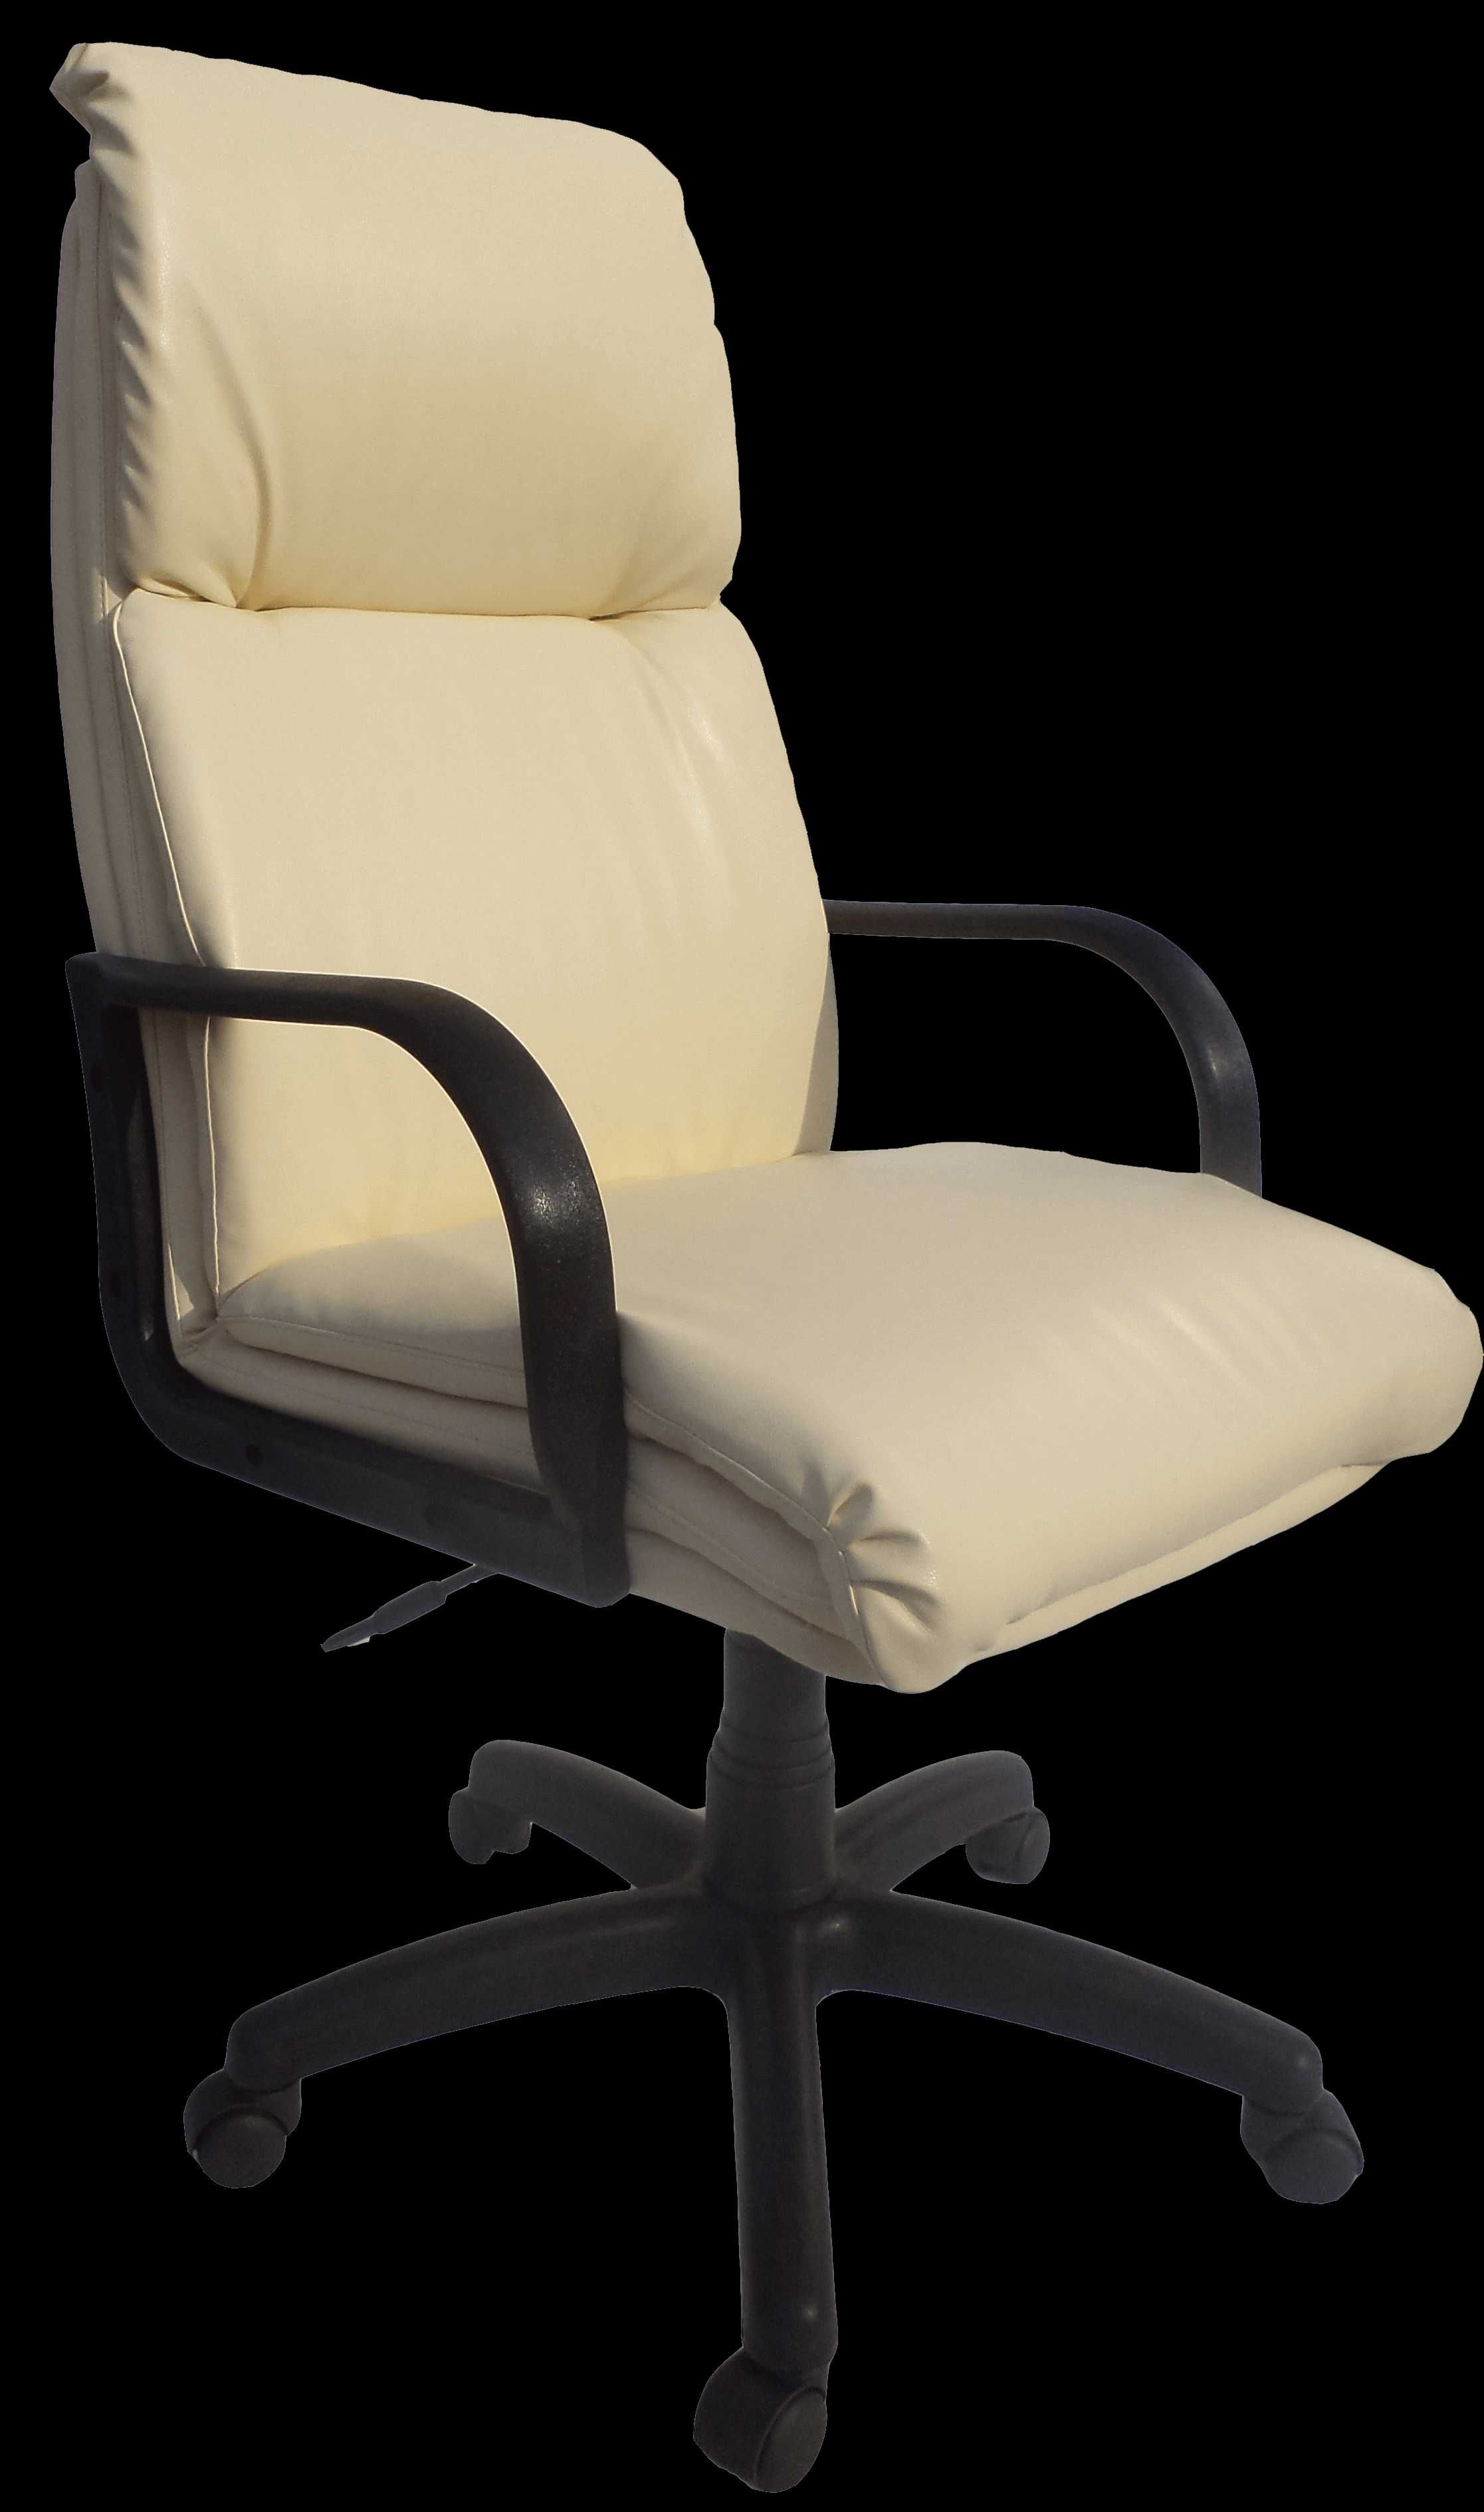 Офісне крісло Марс екошкіра Неаполь колір 17 молочний матовий запчасти